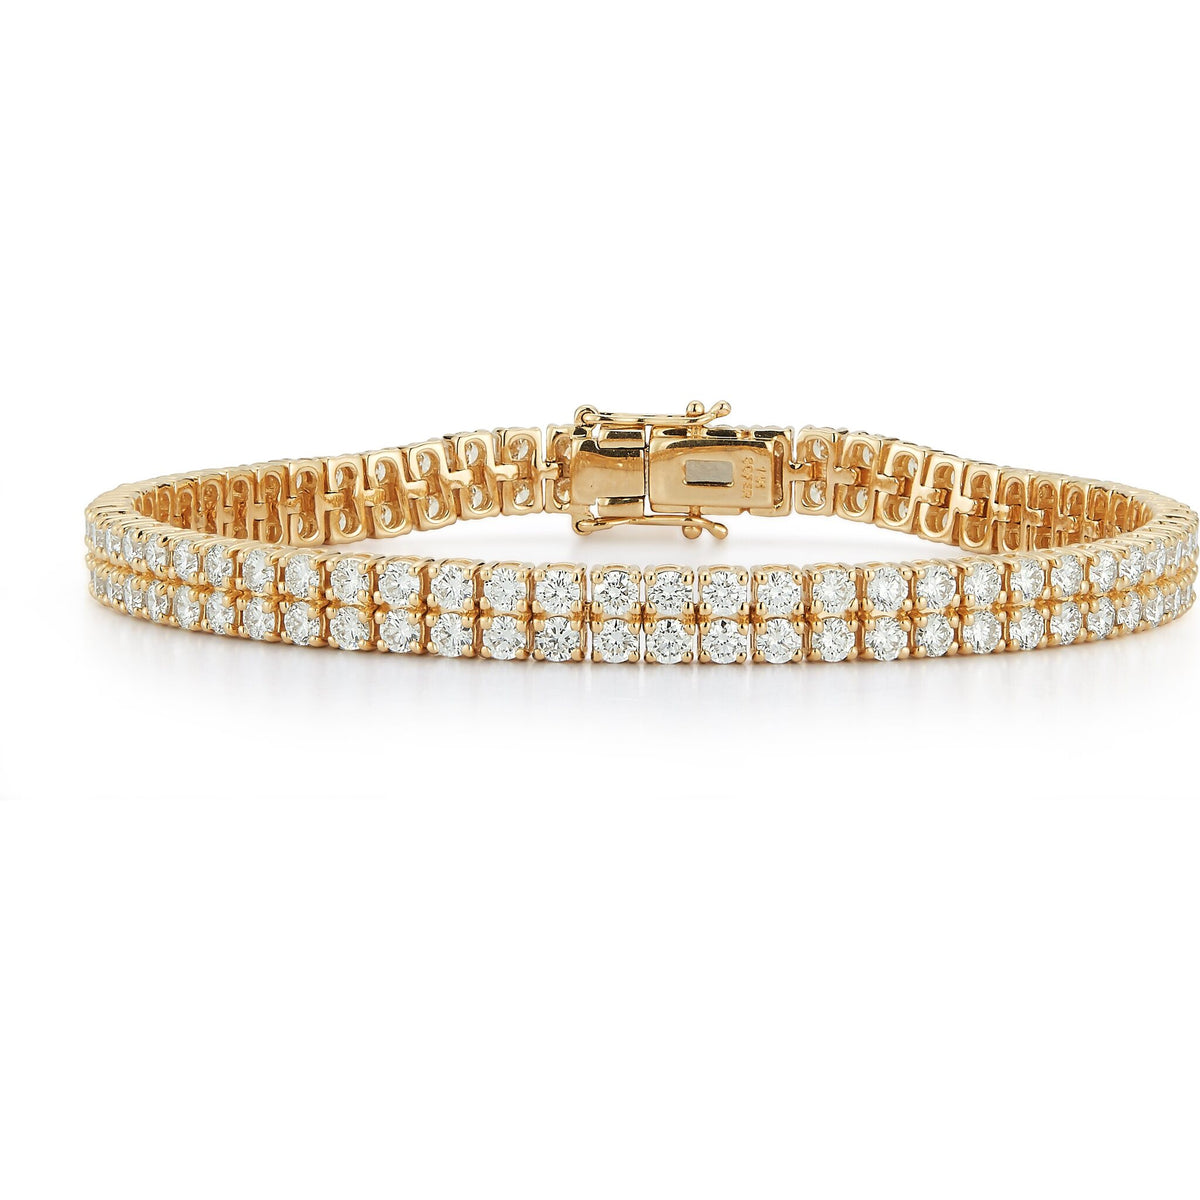 Sofer Jewelry - Two Row Diamond Tennis Bracelet in 14K Yellow Gold